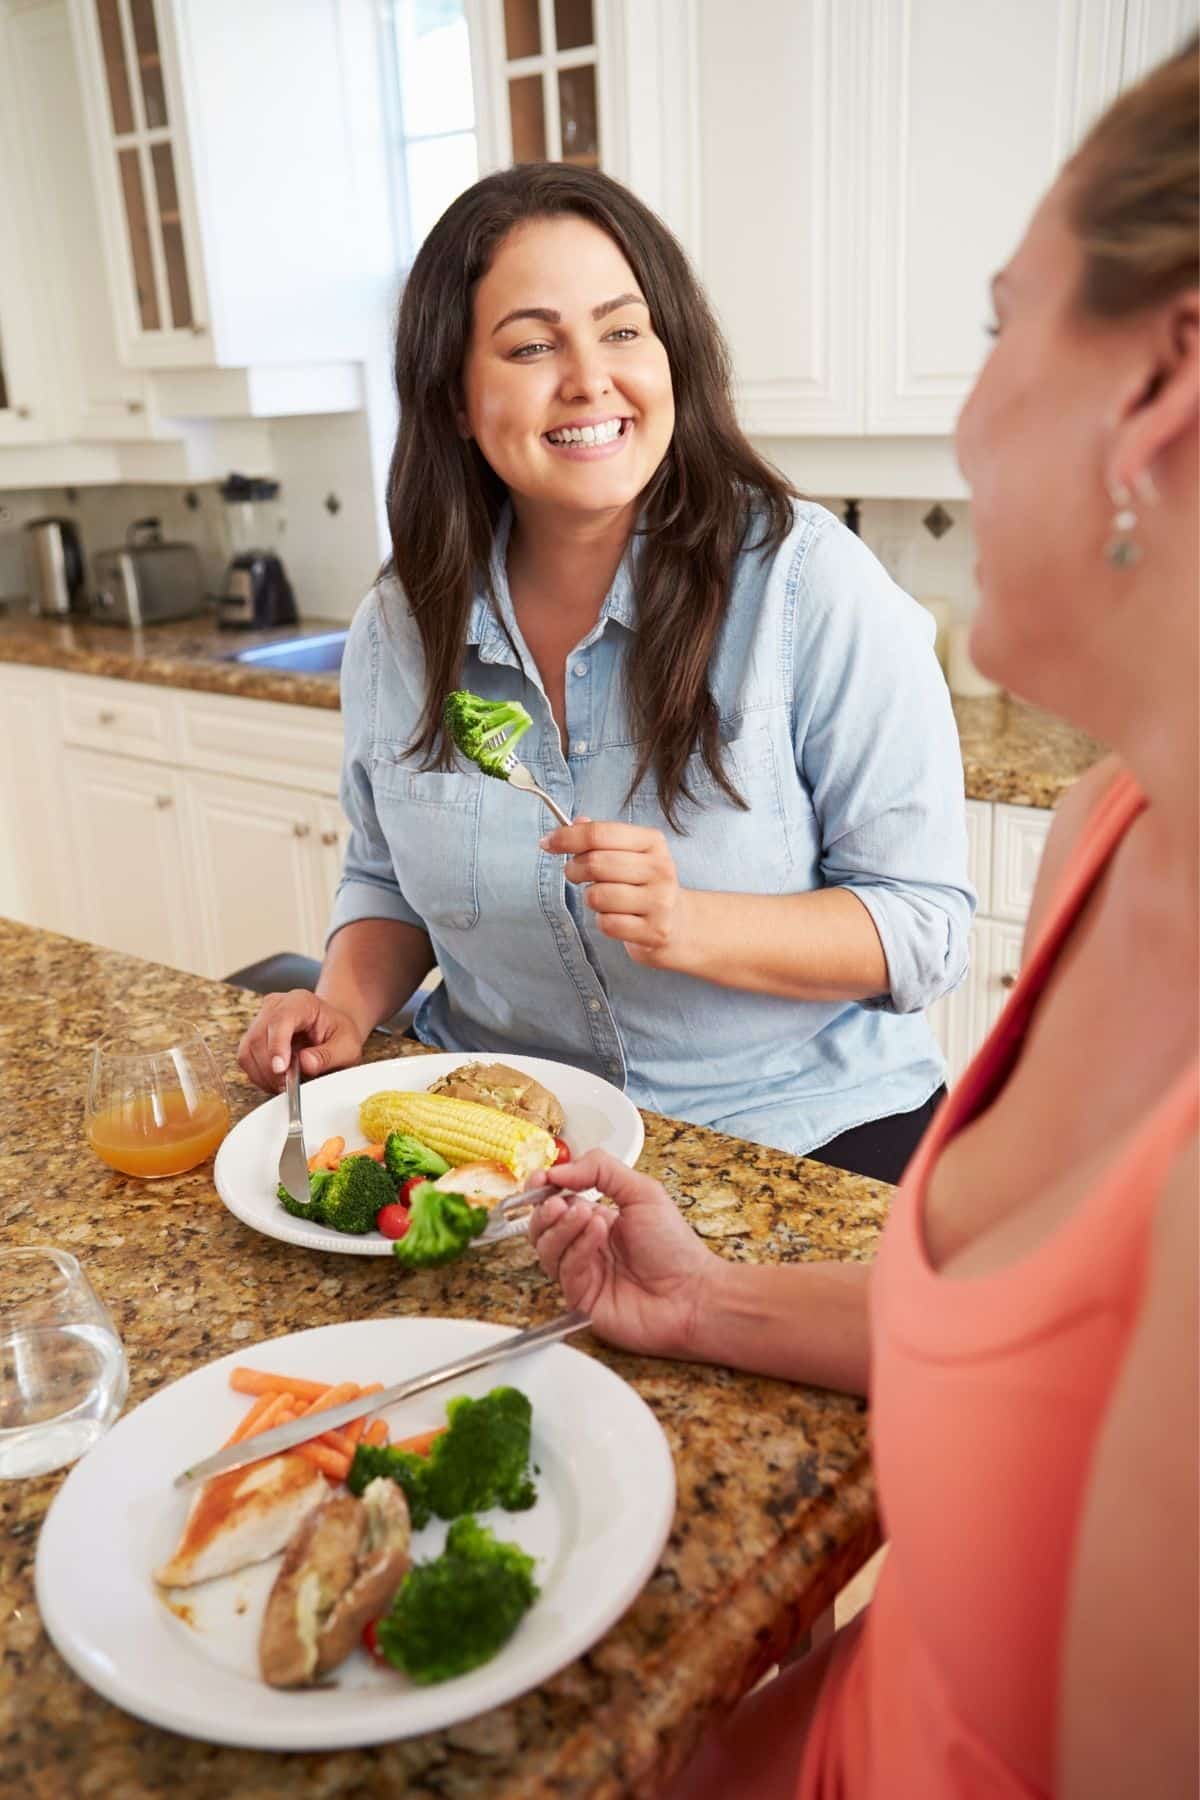 dos mujeres comiendo juntas en una cocina.